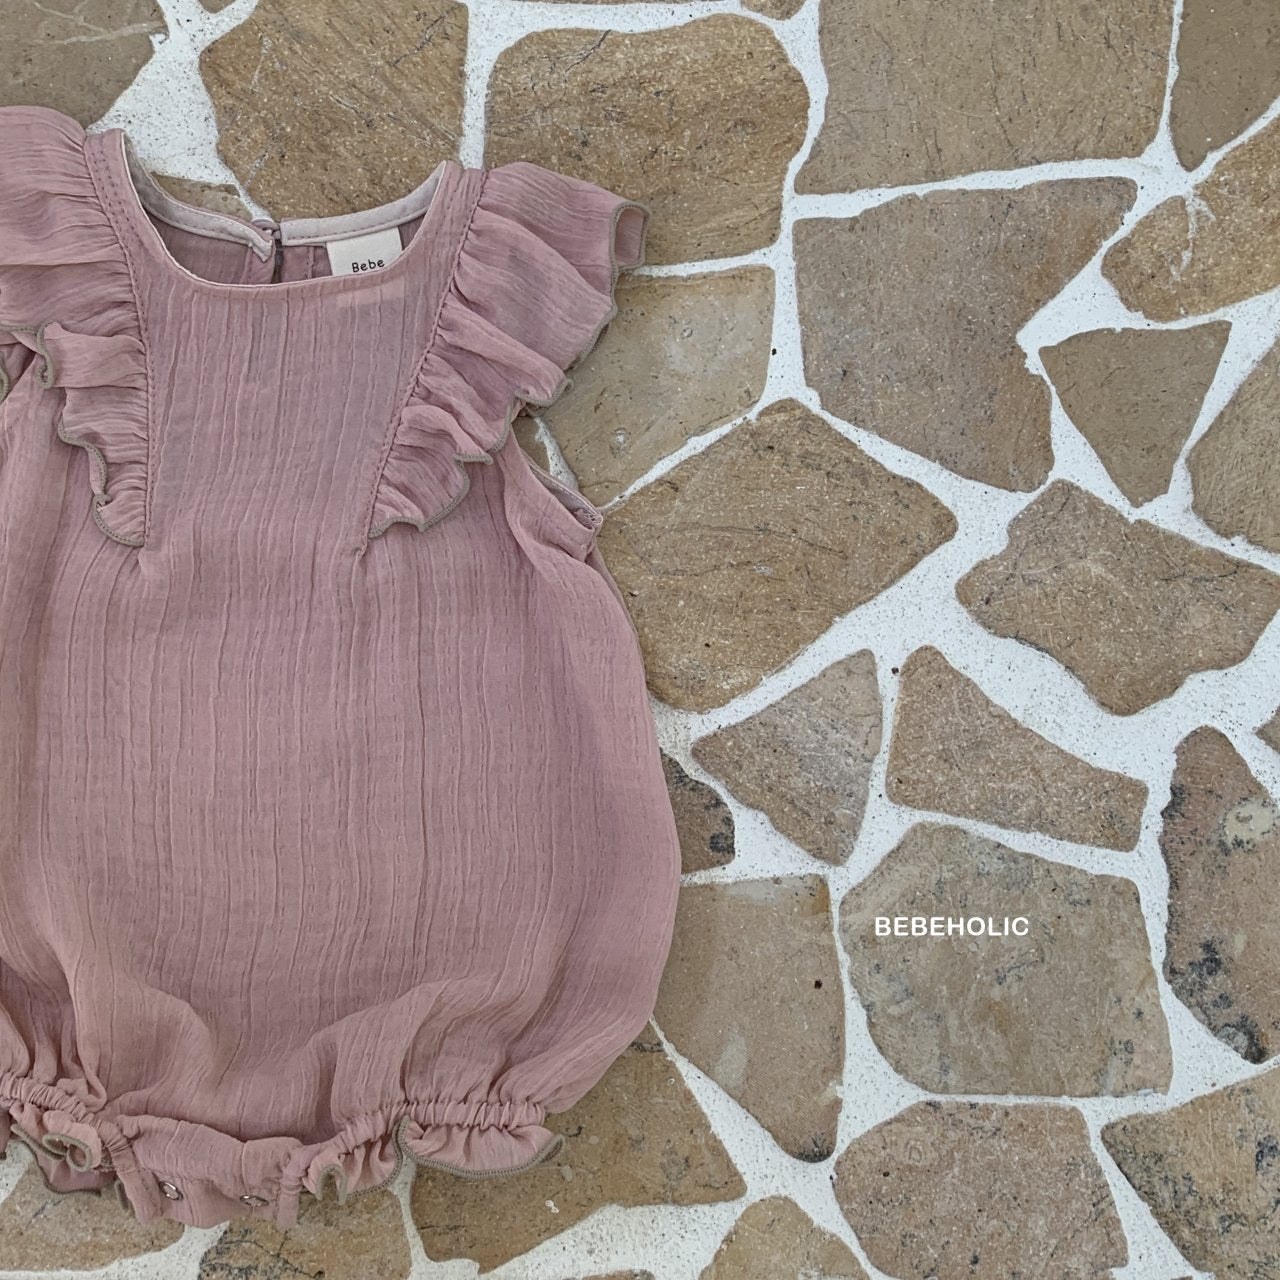 Ein rosafarbener Bebe Holic Lily Wing Bodysuit mit romantischen Rüschenärmeln, flach auf einem beigen Steinfliesenhintergrund mit weißem Fugenmuster gelegt. Die Marke „Bebe Holic“ ist sichtbar.